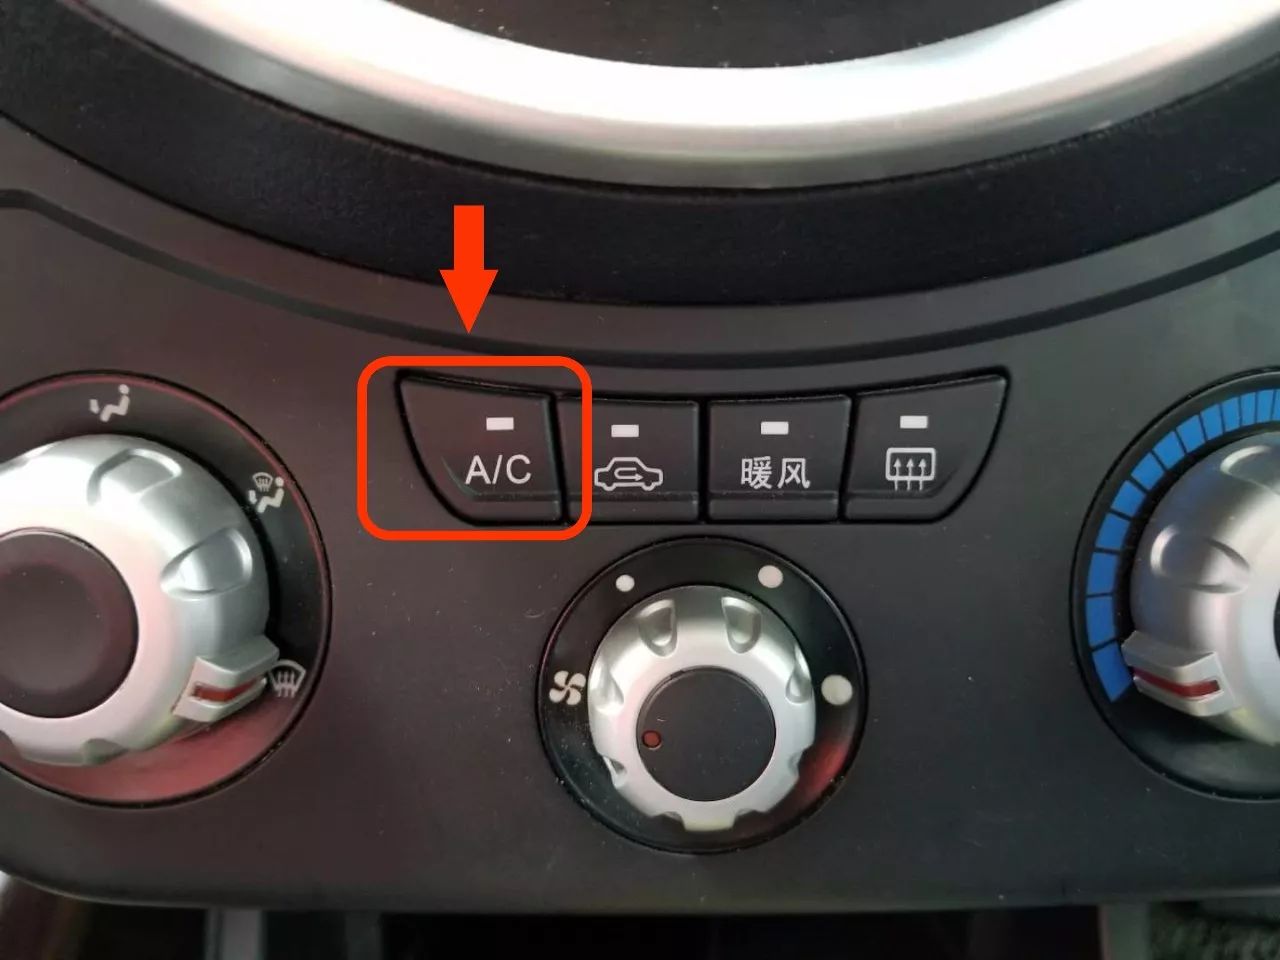 车内空调制冷标志图片